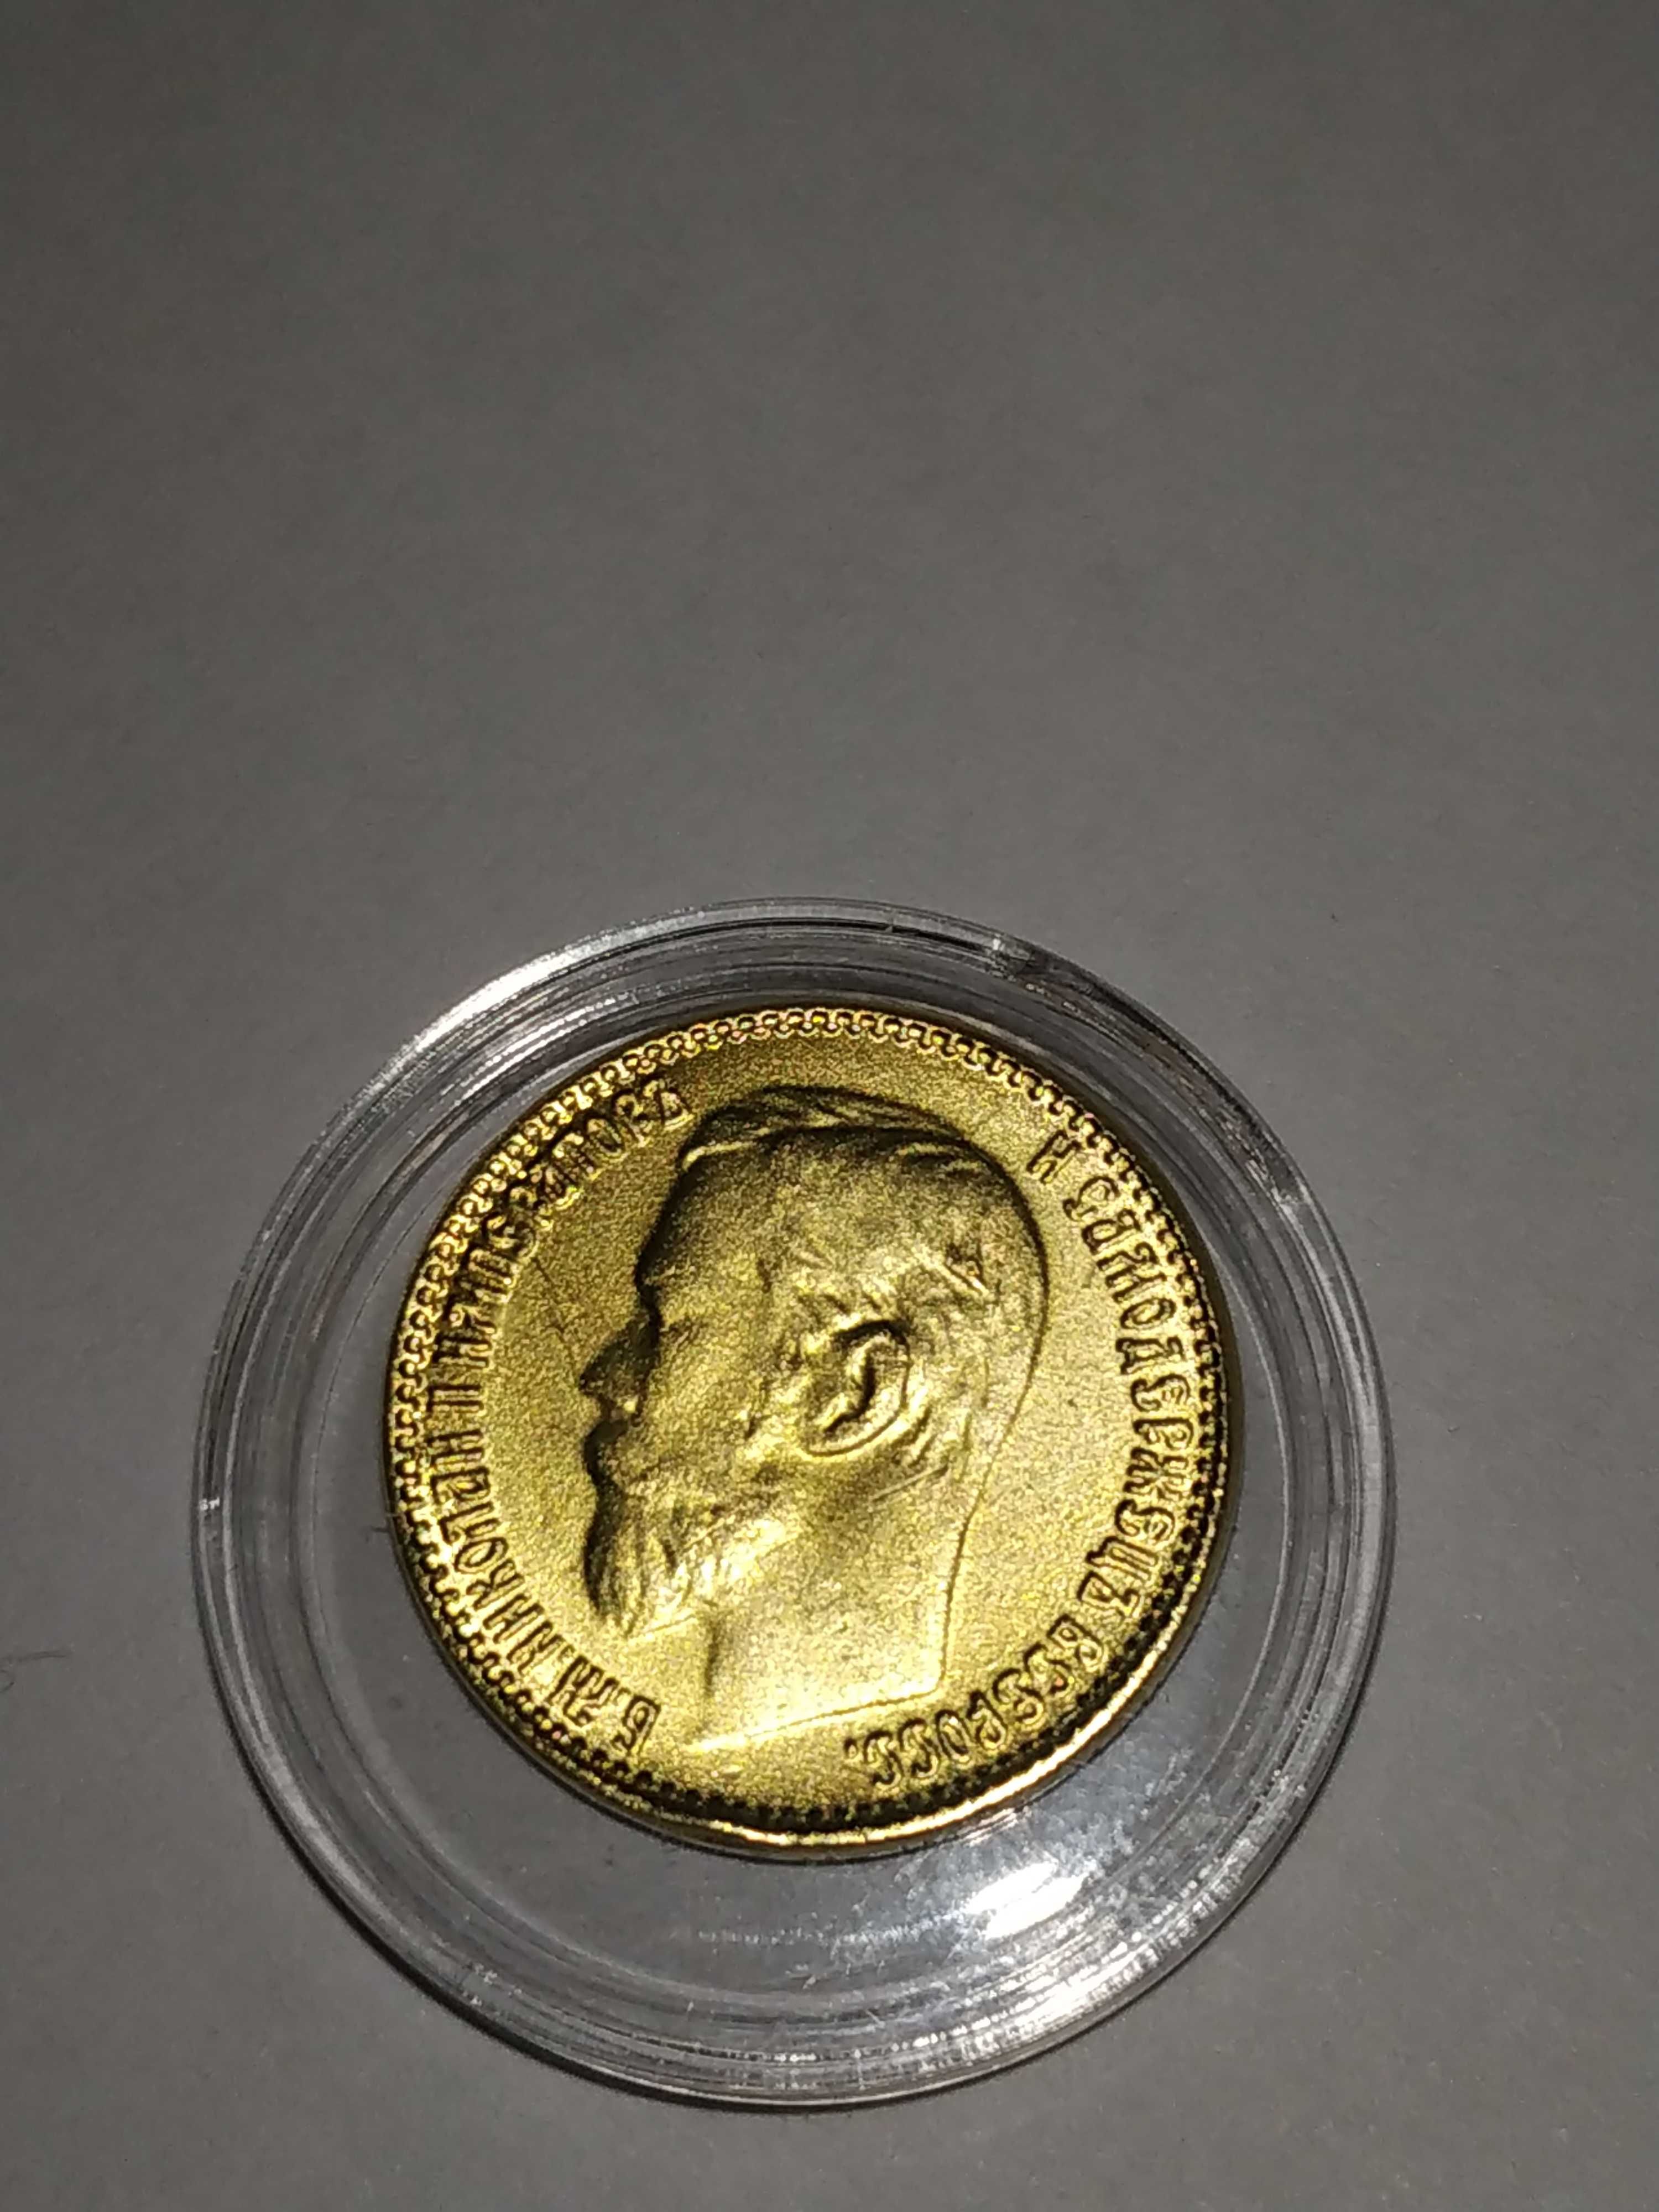 Царская монета 5 рублей Николая 2, Александра 3 плюс капсула